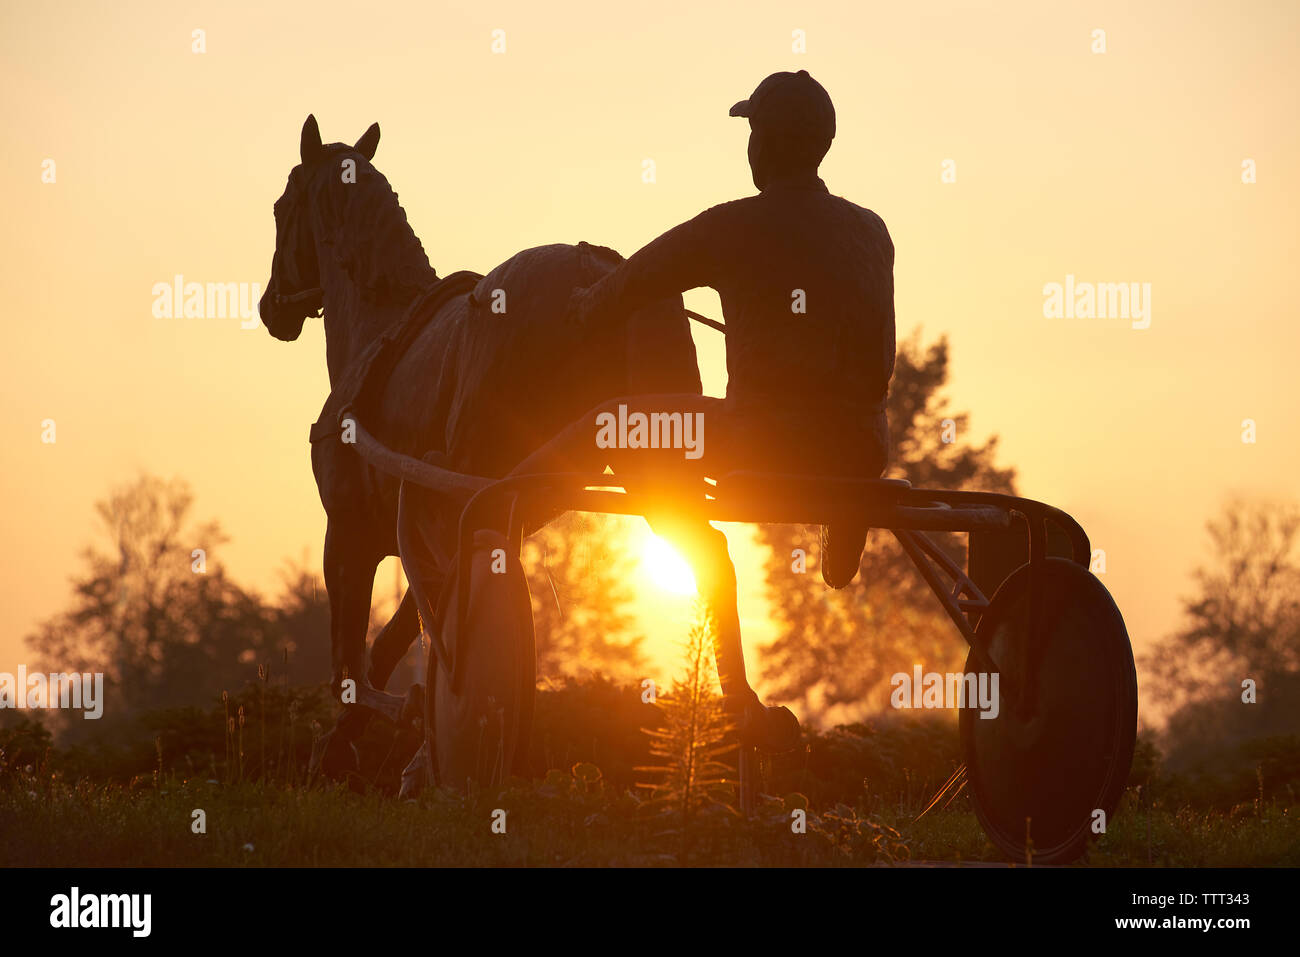 Statue de Silhouette homme assis sur le cheval panier contre le ciel au lever du soleil Banque D'Images